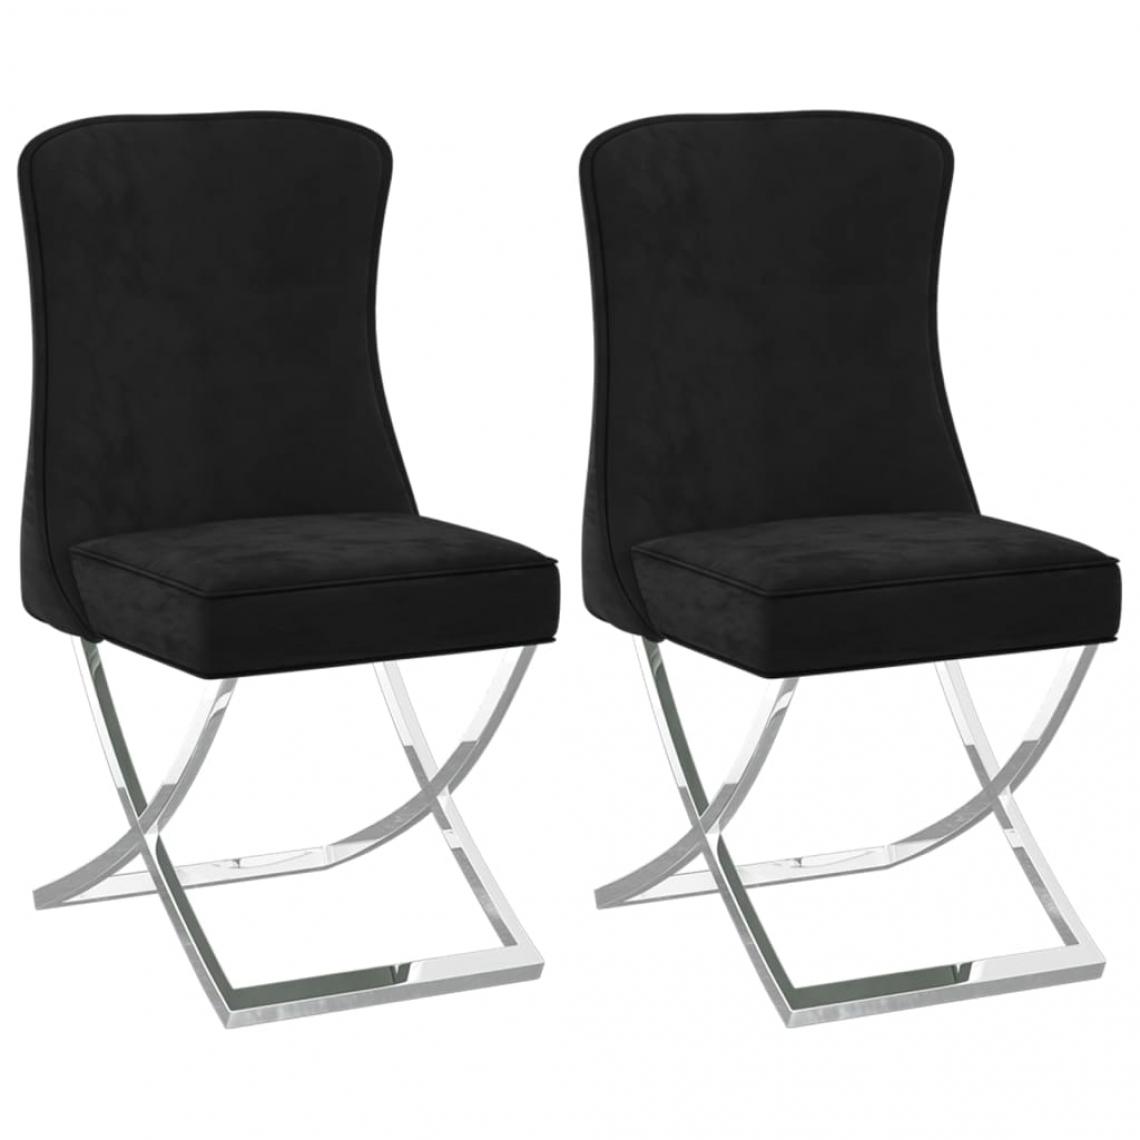 Decoshop26 - Lot de 2 chaises de salle à manger cuisine 53x52x98 cm design moderne velours noir et inox CDS020791 - Chaises